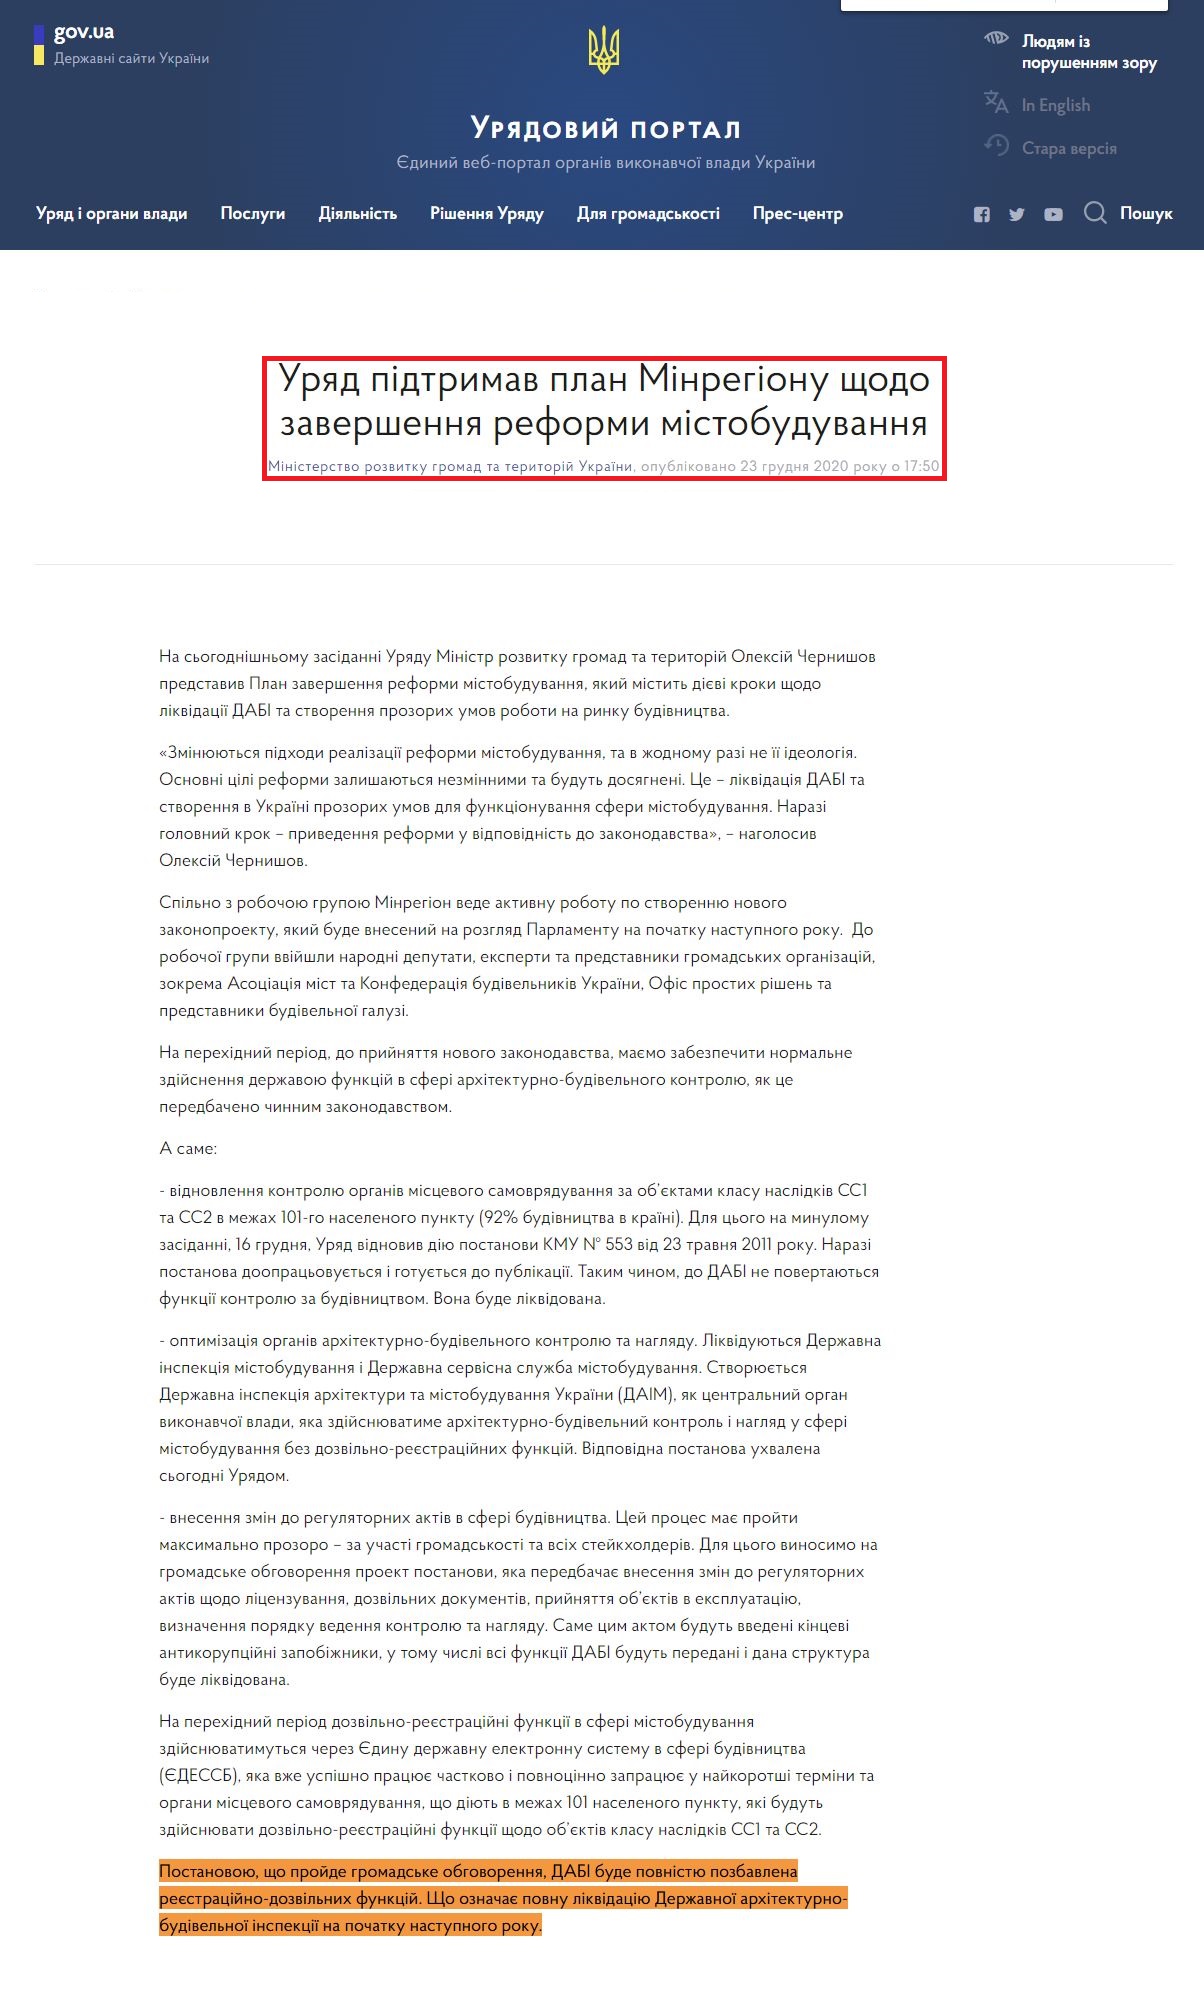 https://www.kmu.gov.ua/news/uryad-pidtrimav-plan-minregionu-shchodo-zavershennya-reformi-mistobuduvannya